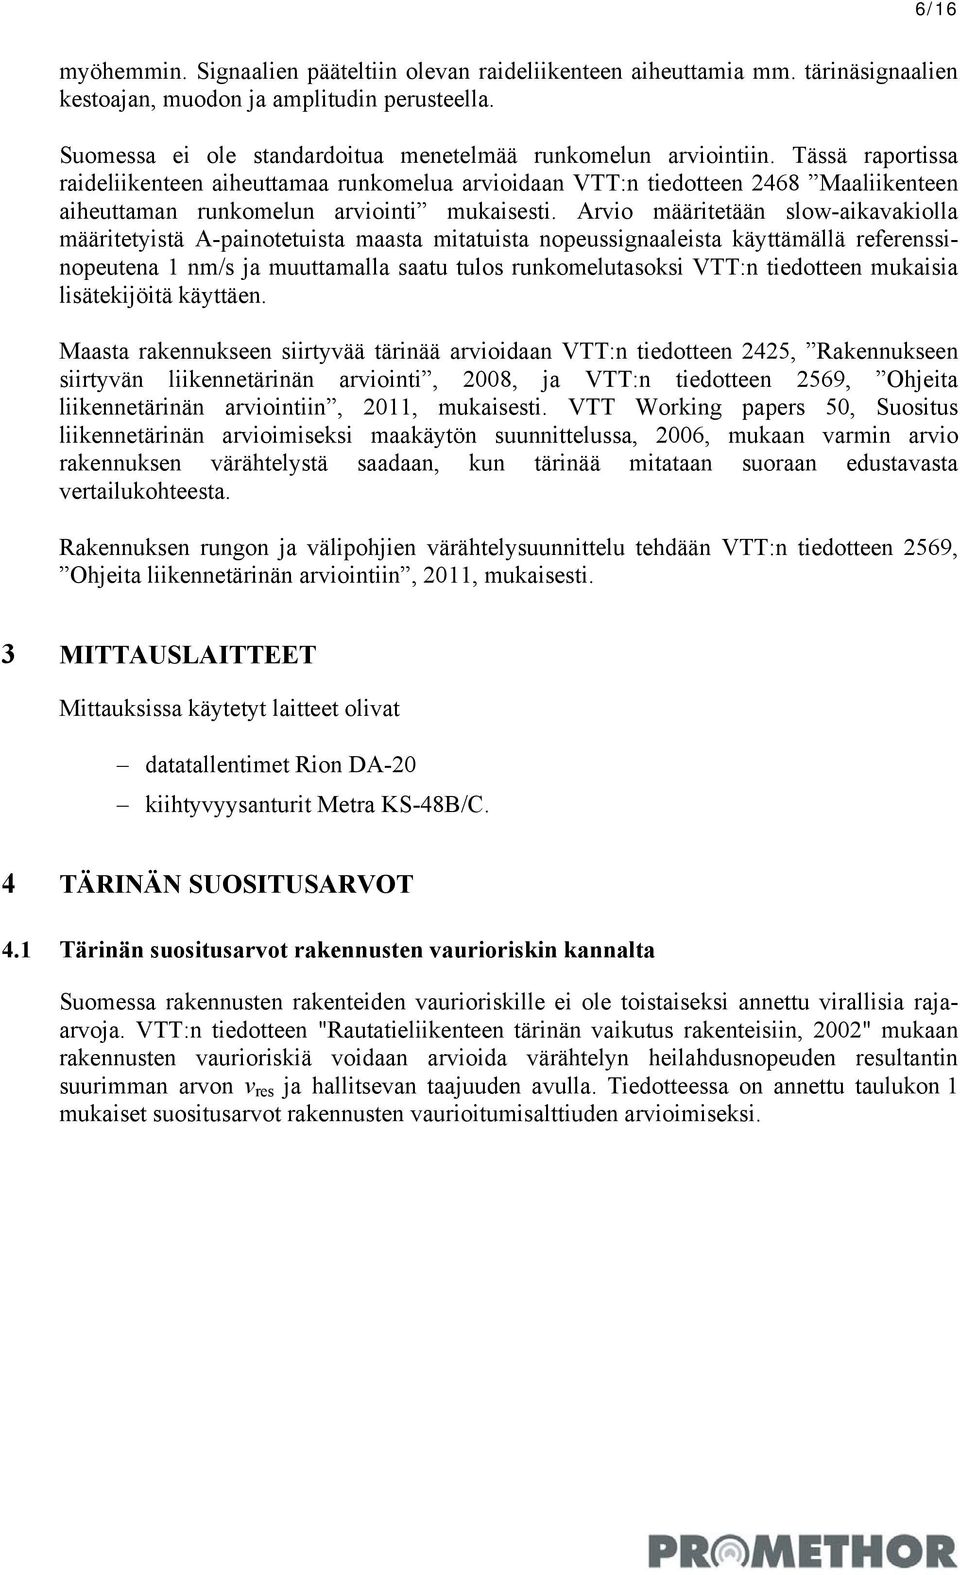 Tässä raportissa raideliikenteen aiheuttamaa runkomelua arvioidaan VTT:n tiedotteen 2468 Maaliikenteen aiheuttaman runkomelun arviointi mukaisesti.